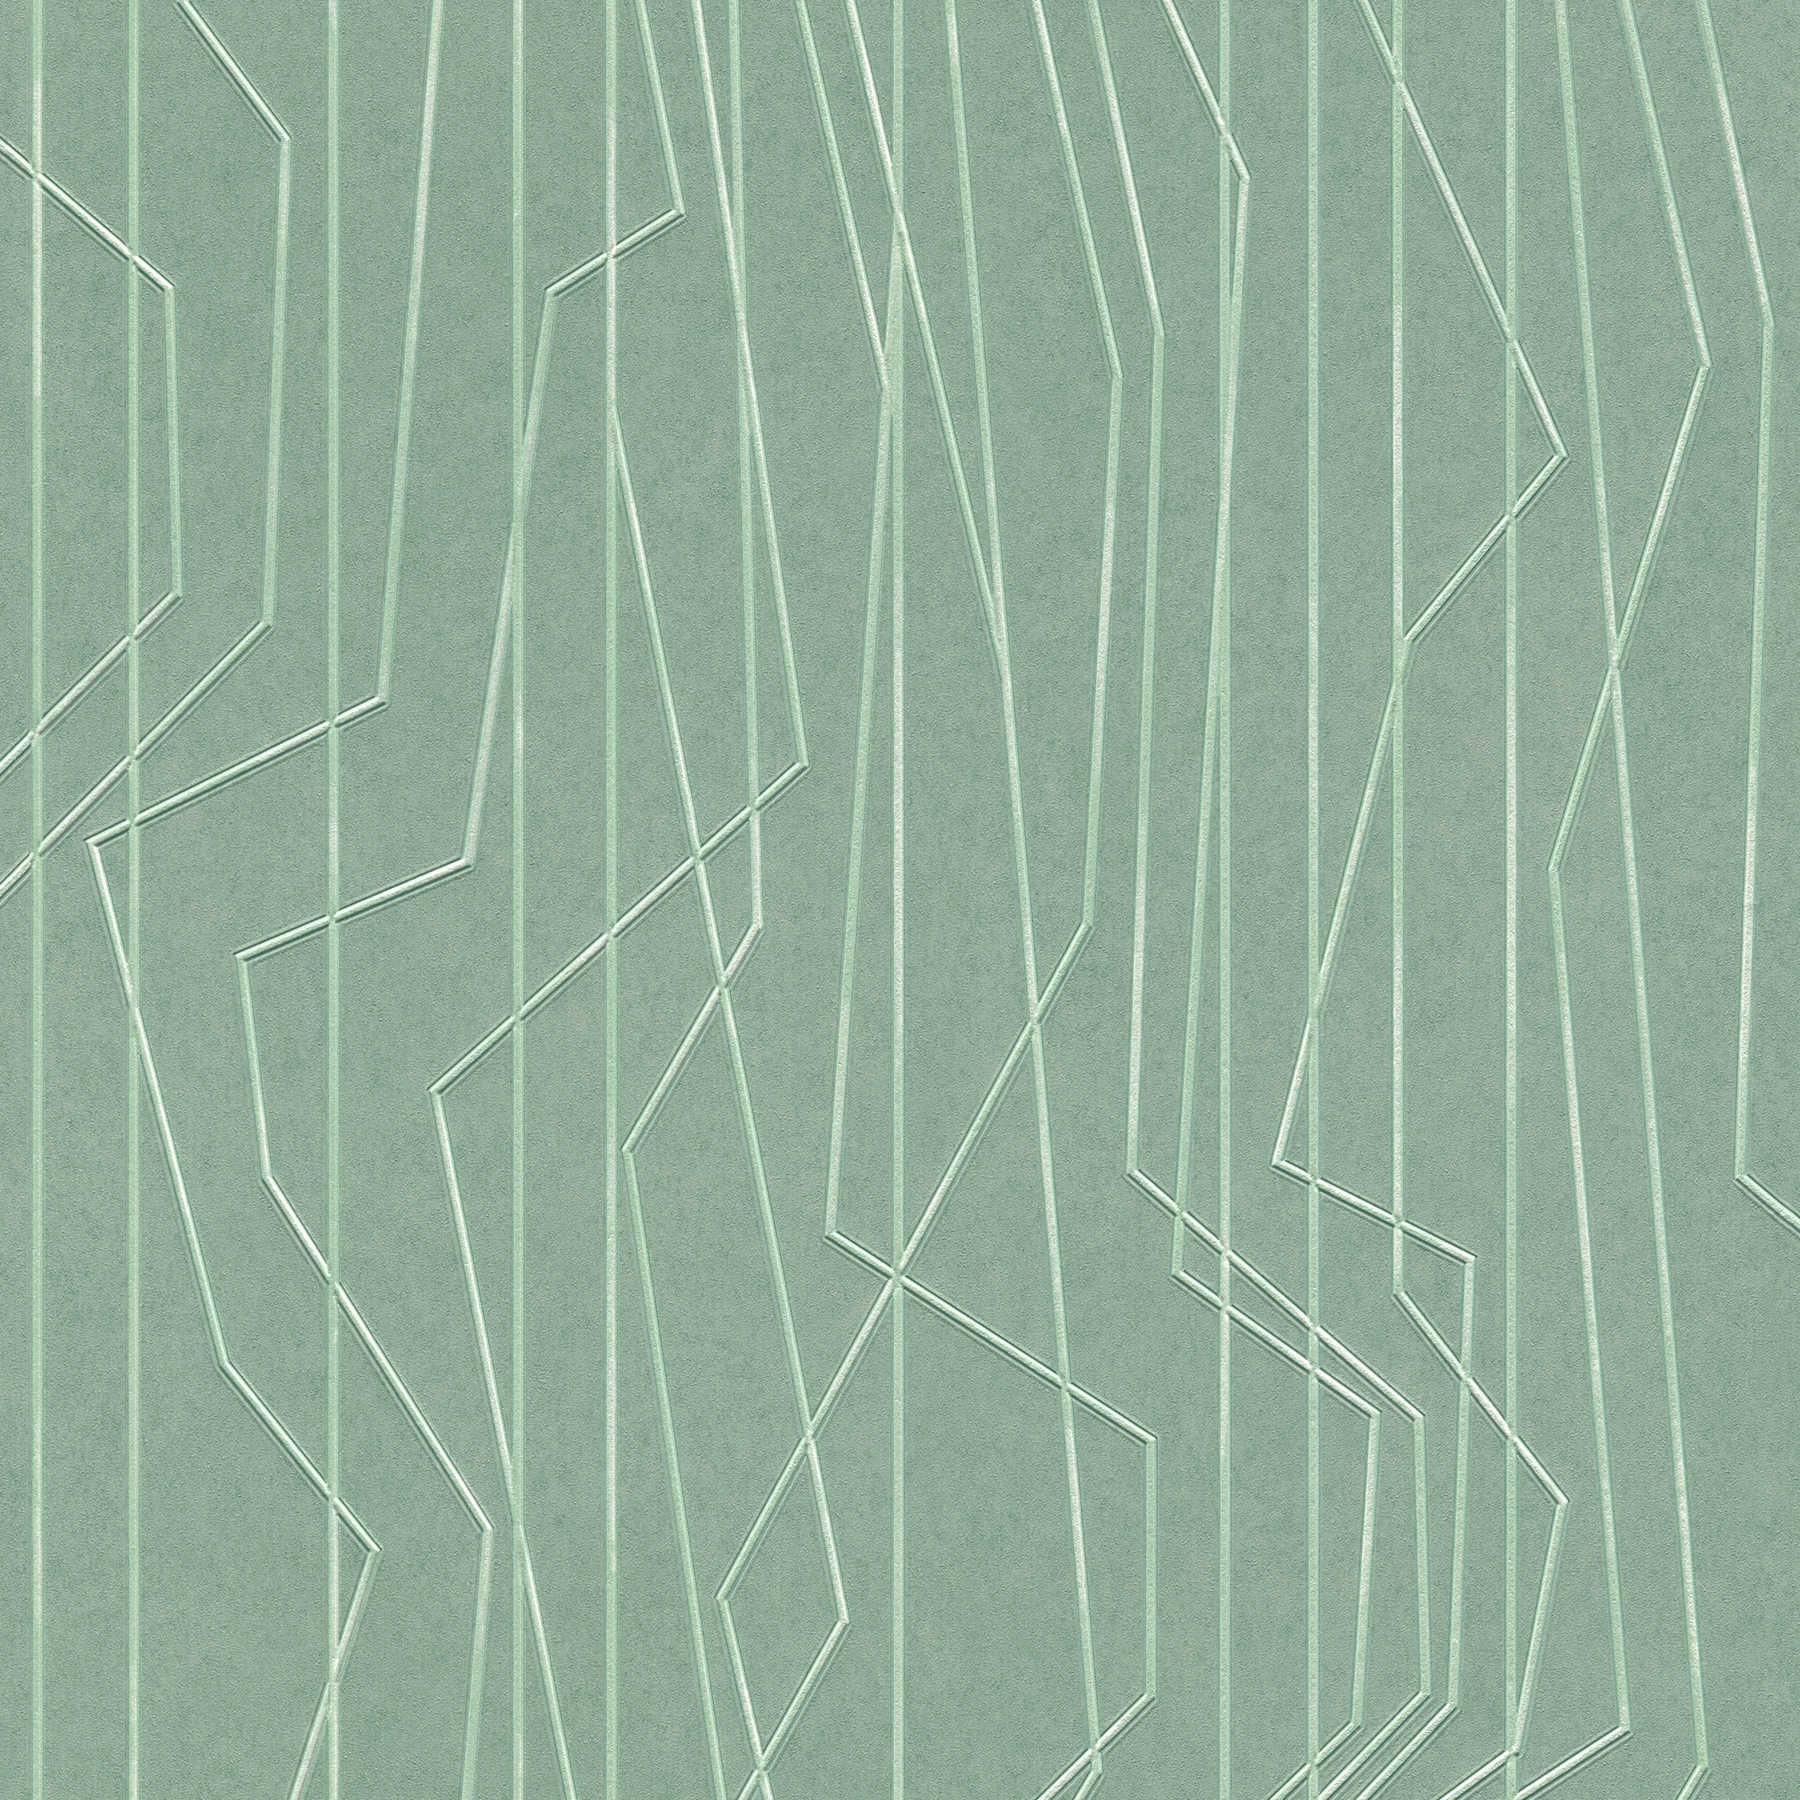 Groen vliesbehang met reliëfpatroon - Groen
